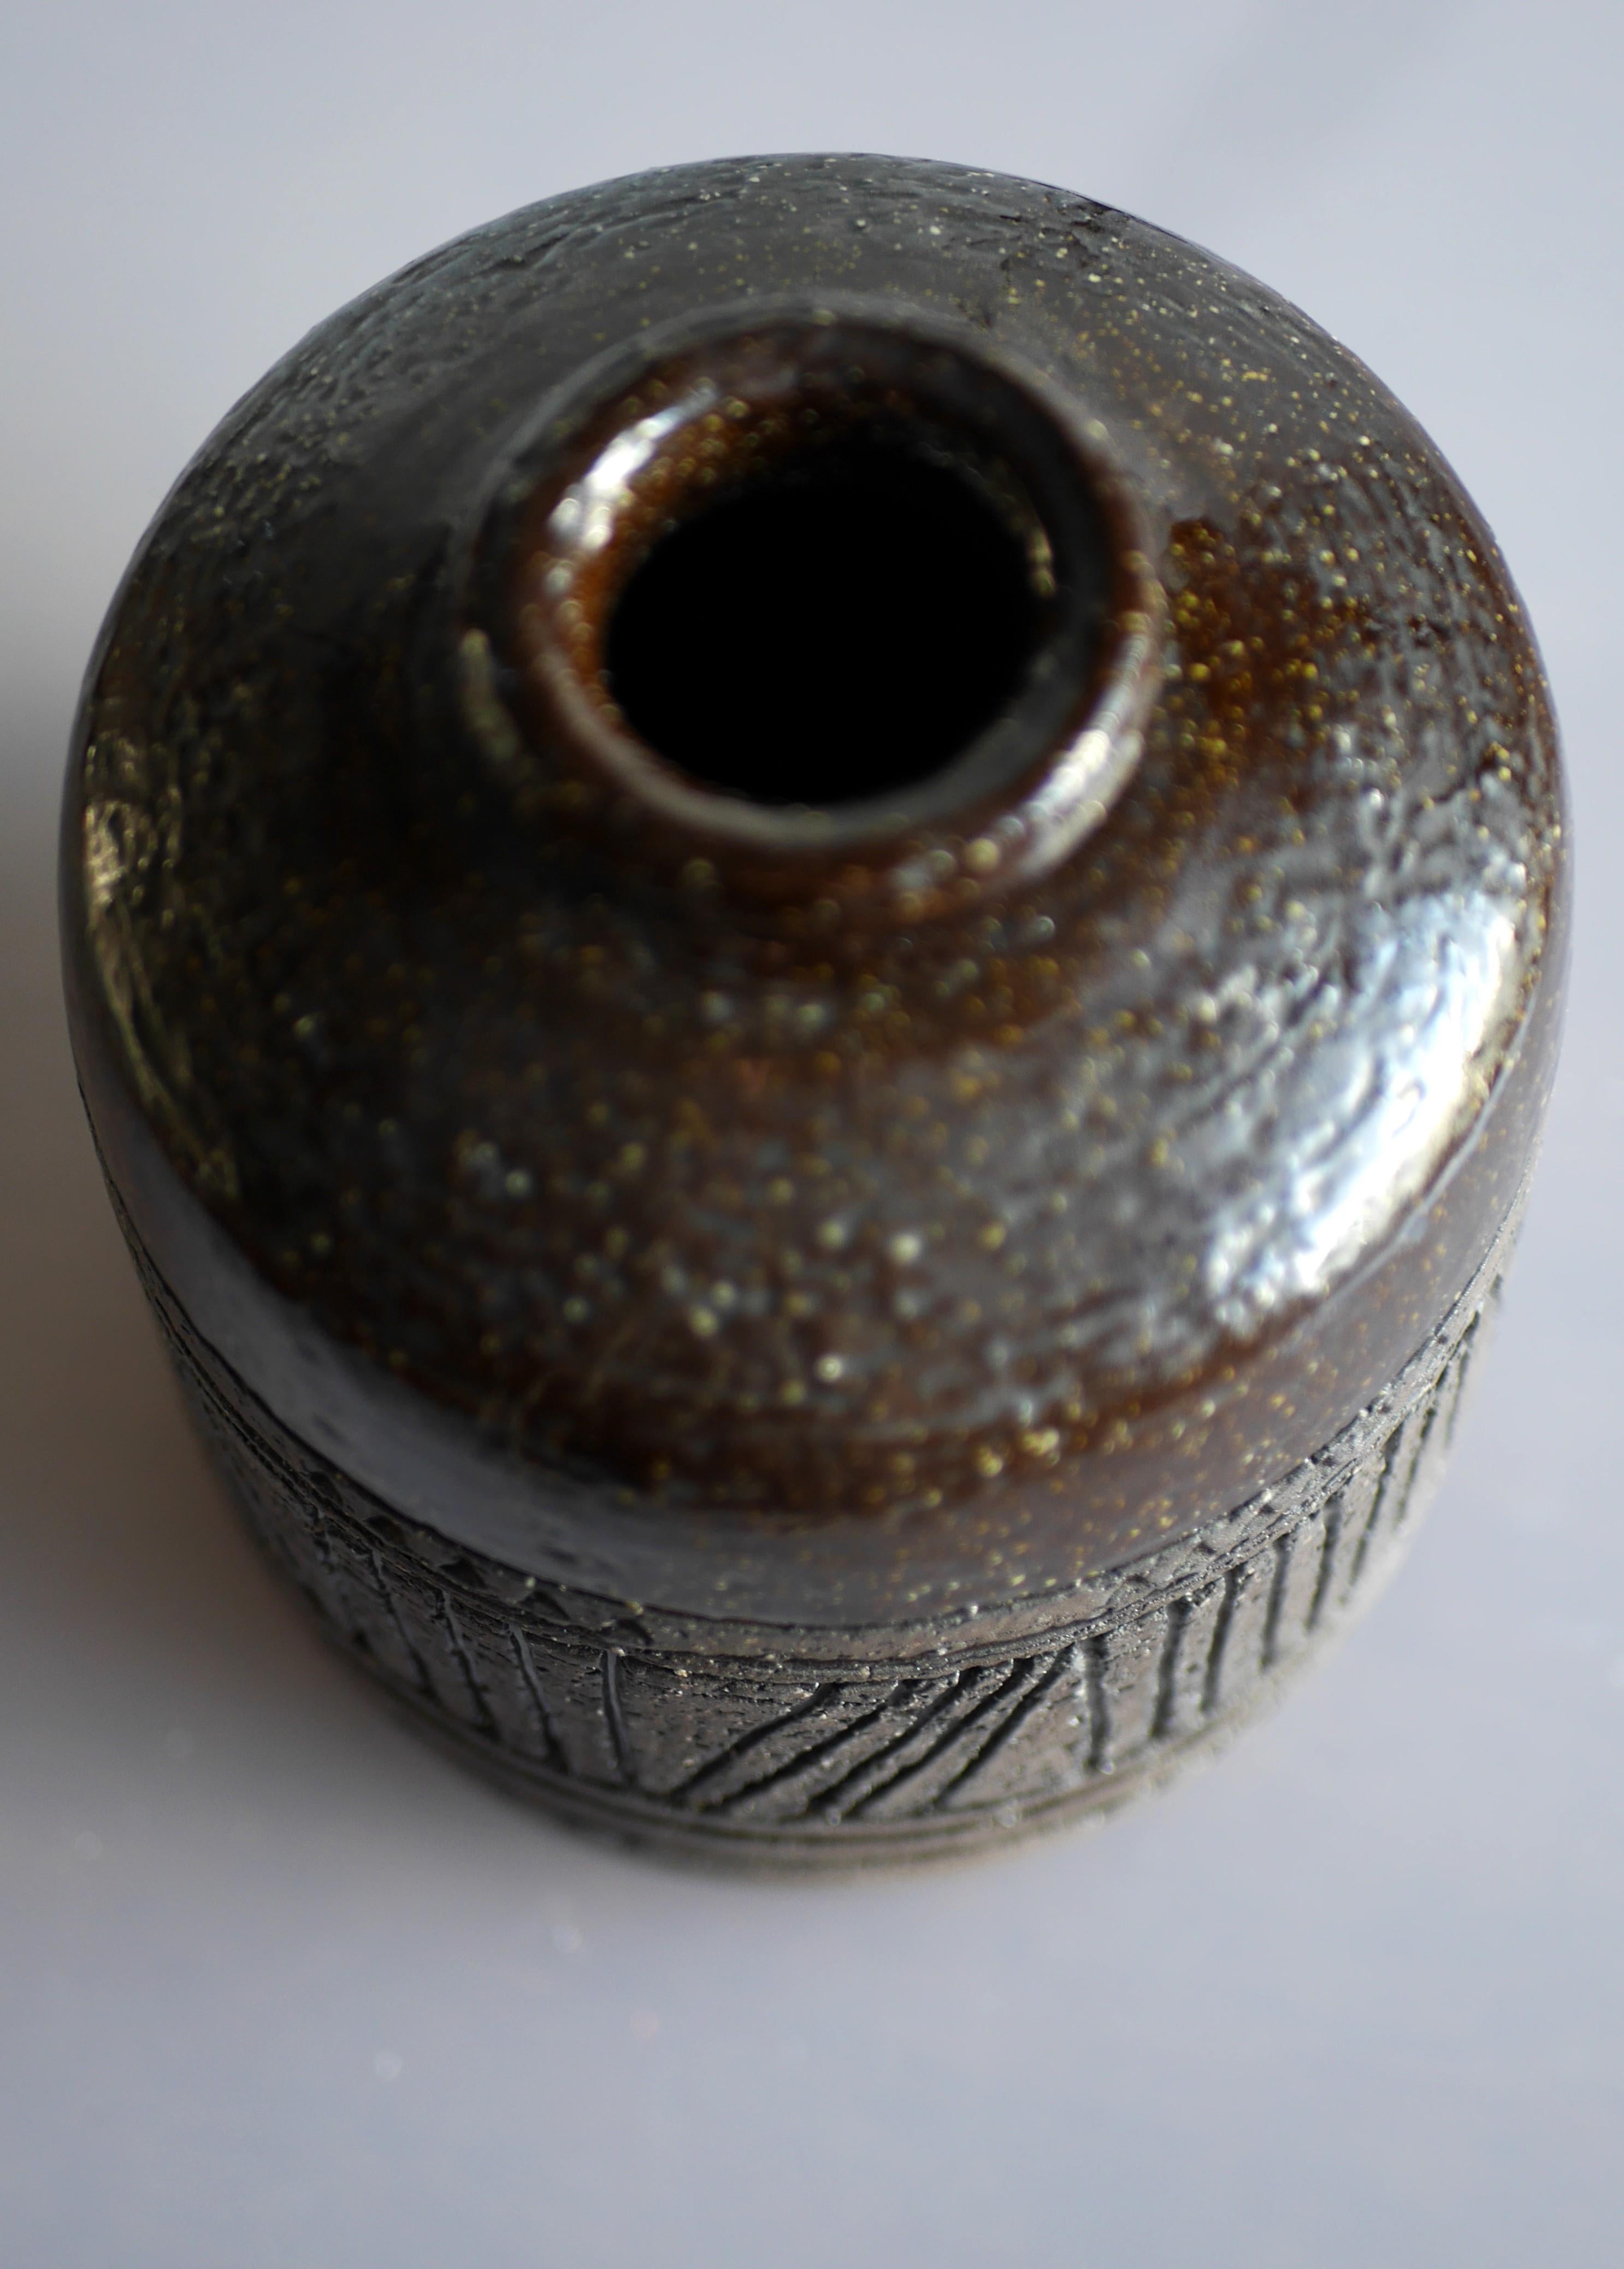 Modernist, earthenware ceramic vase by Inger Persson for Rörstrand, Sweden 1